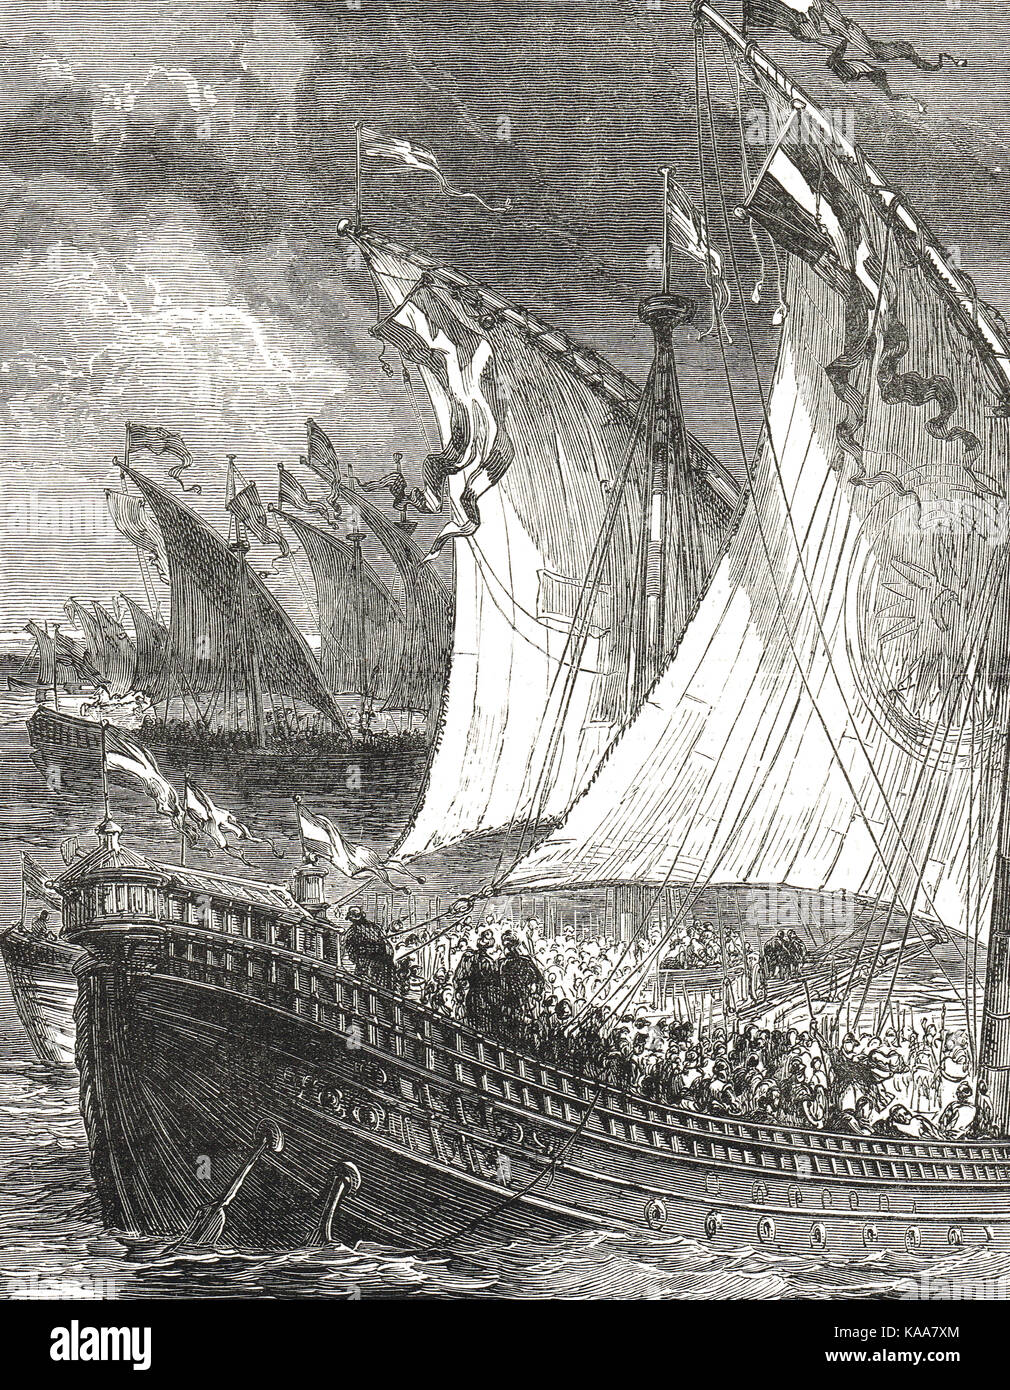 El rey sweyn (primer rey vikingo de Inglaterra) navegar hasta el Támesis, 1013 Foto de stock